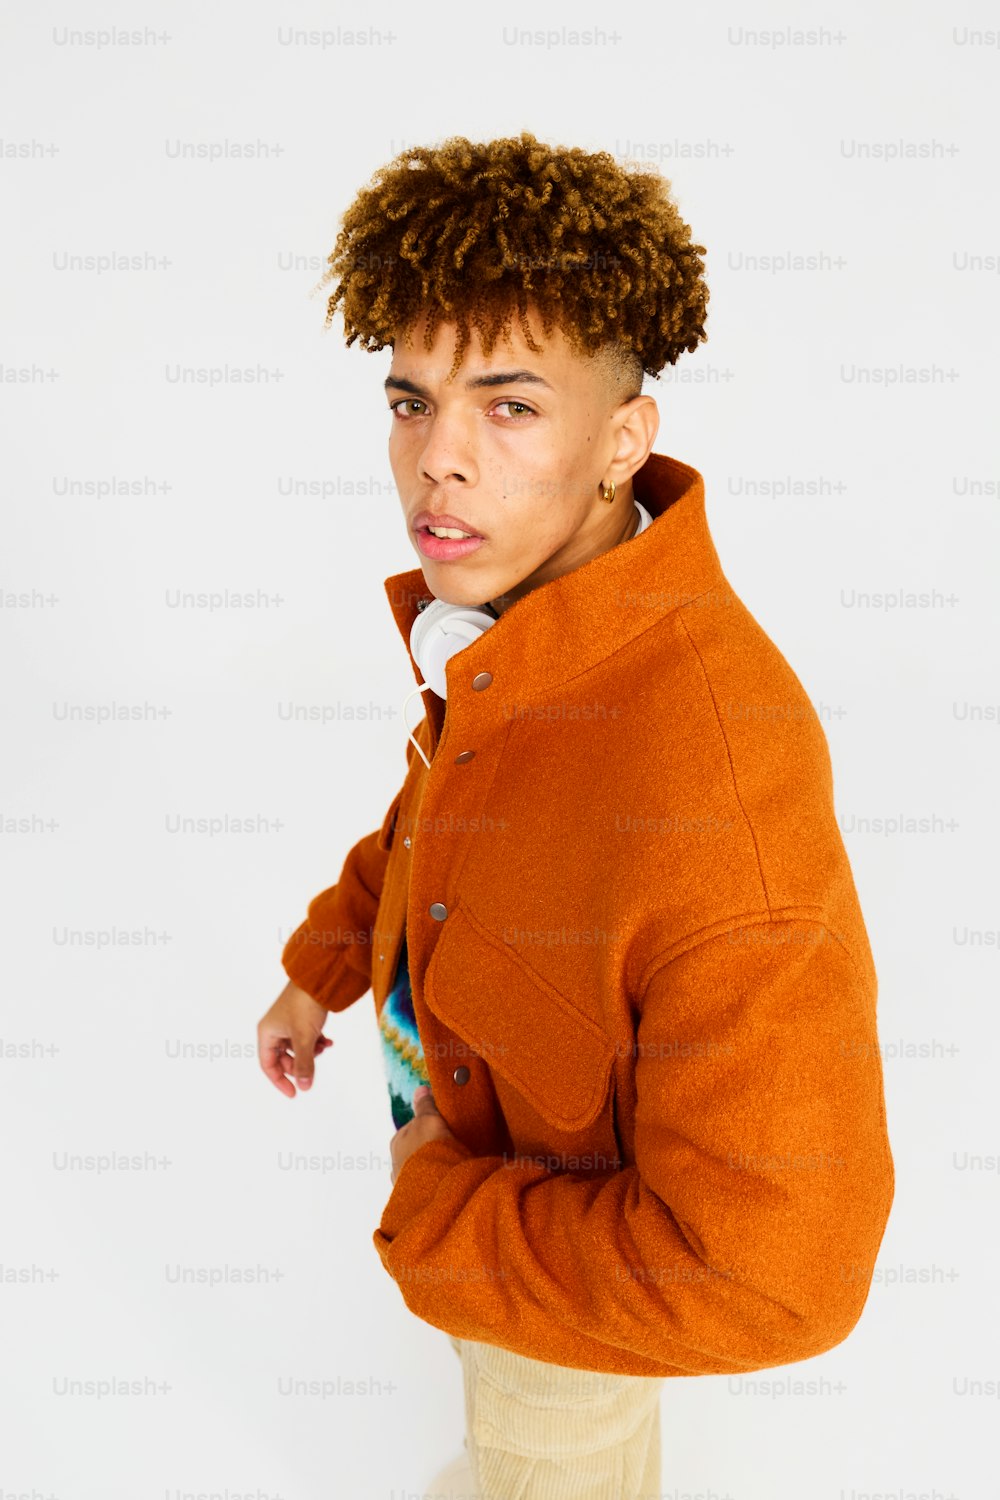 Ein Mann mit lockigem Haar trägt eine orangefarbene Jacke